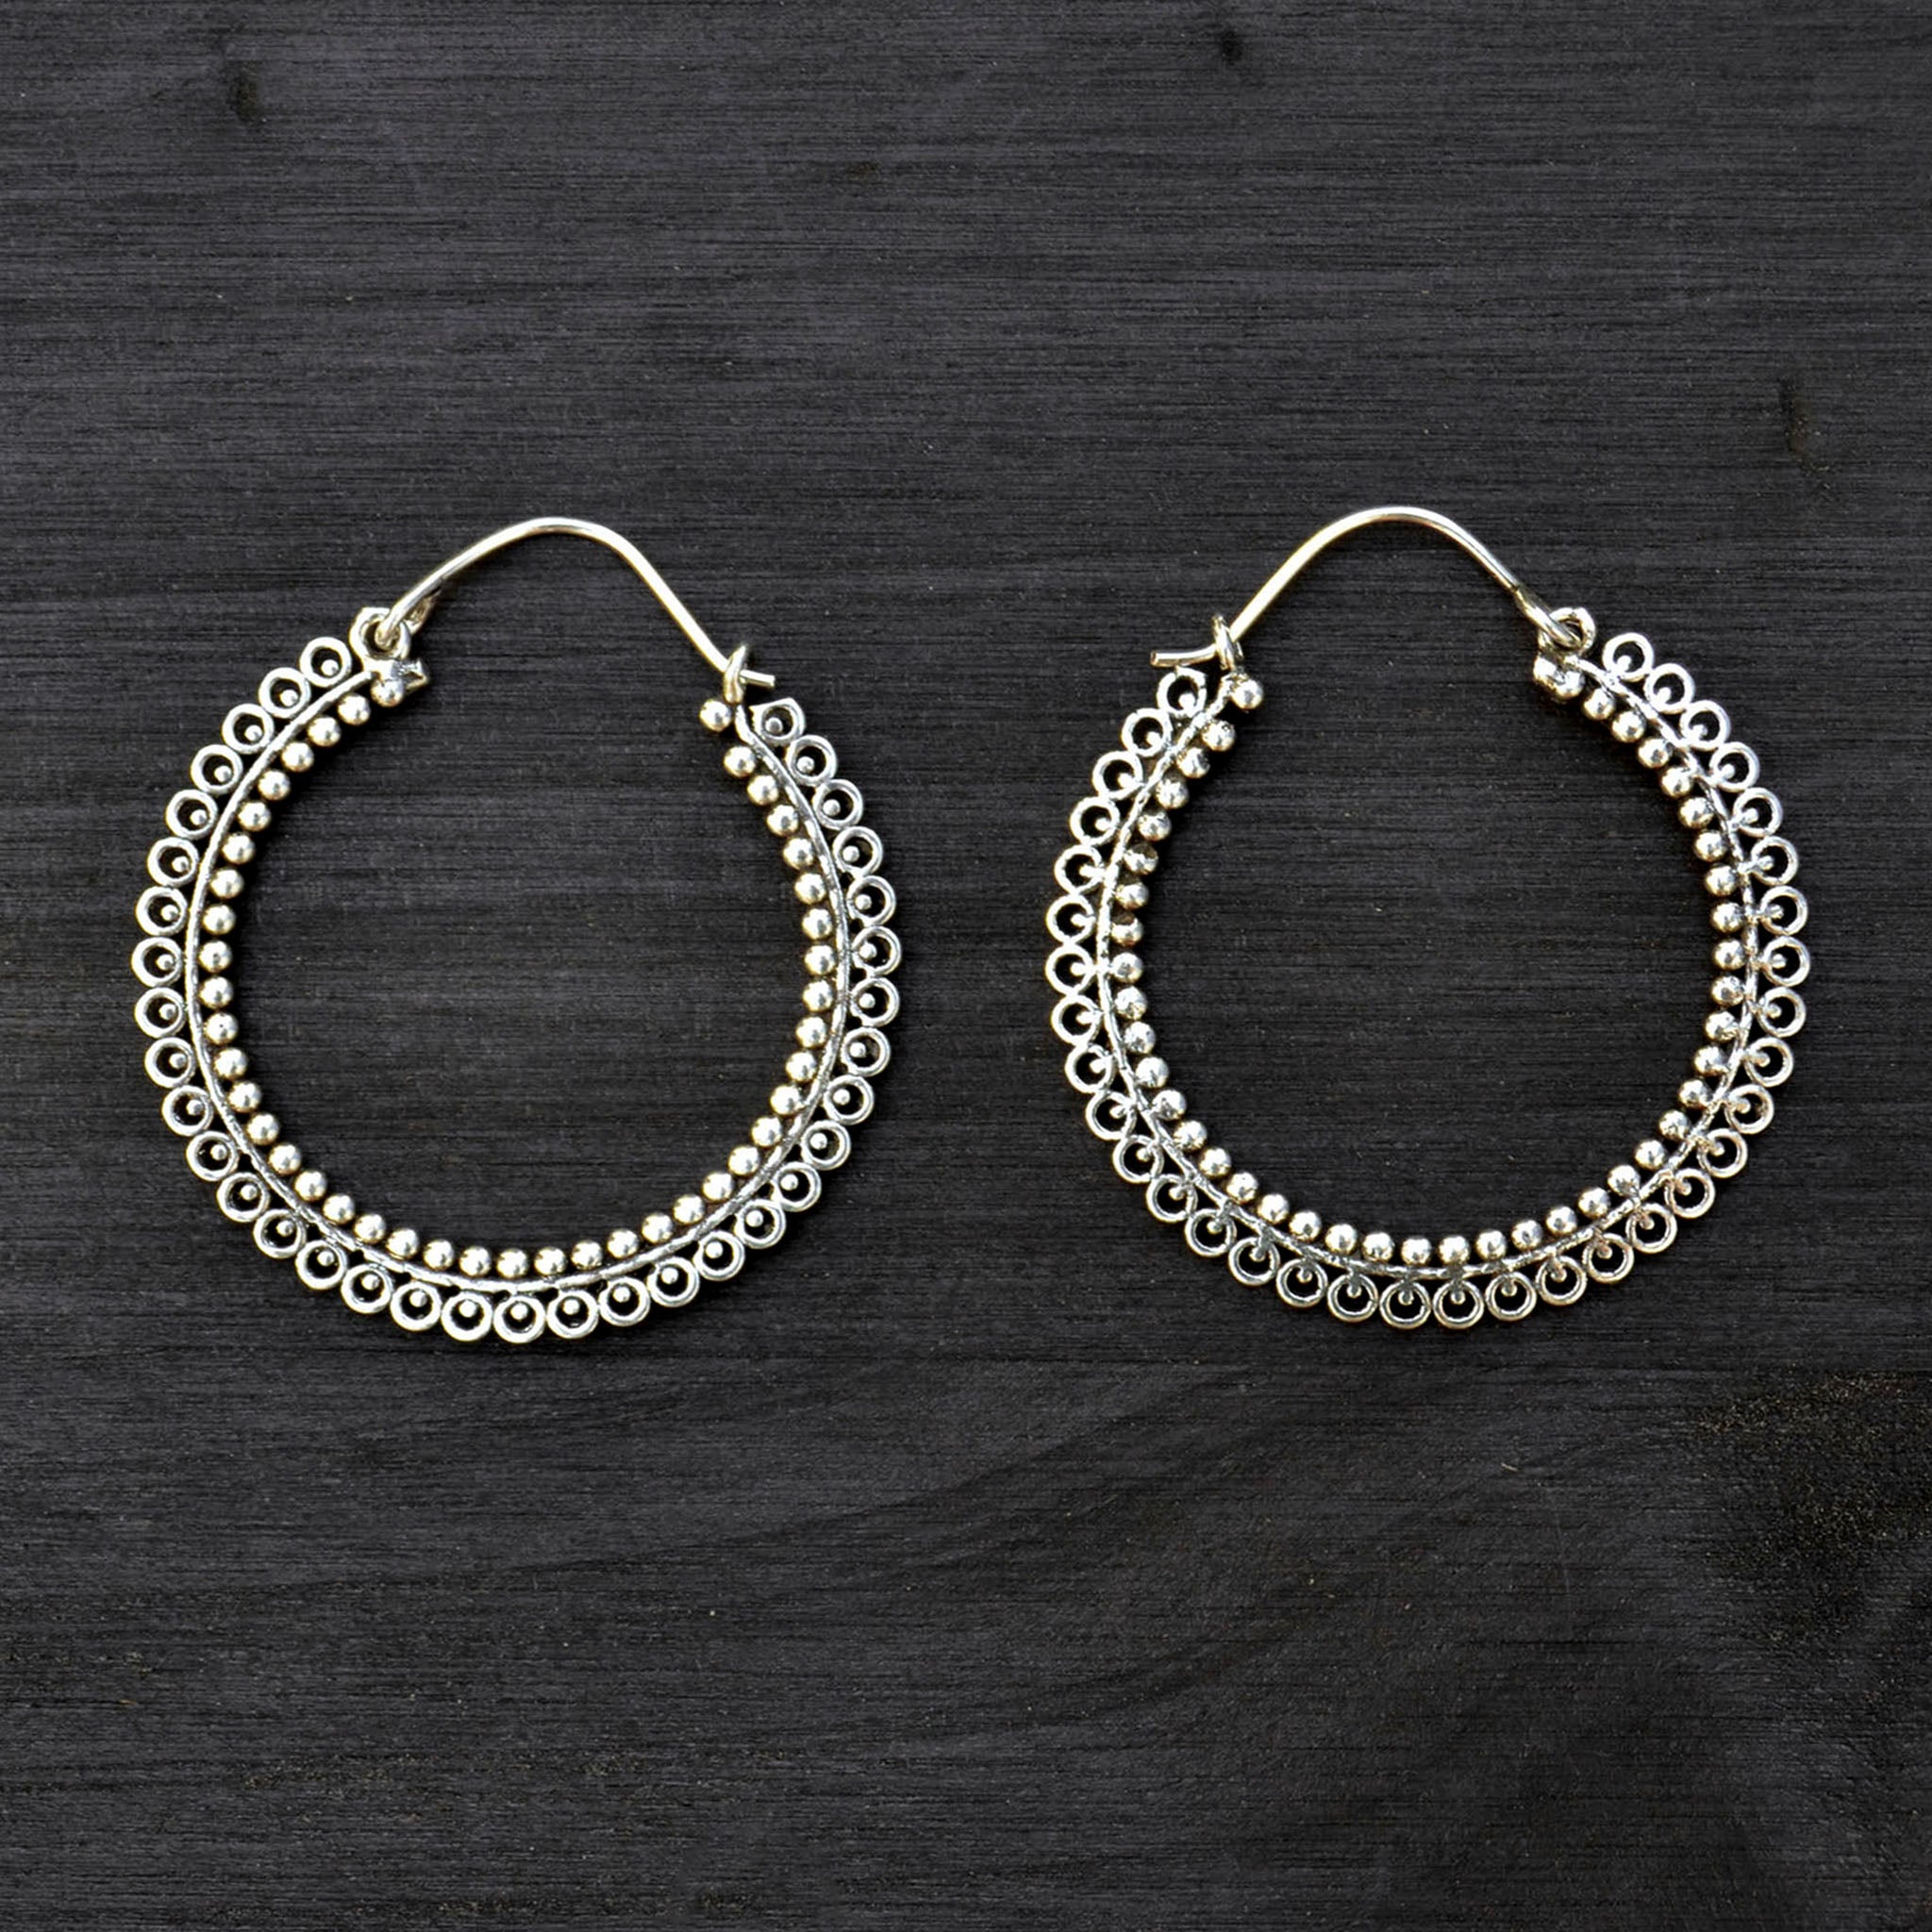 Banjara hoop earrings